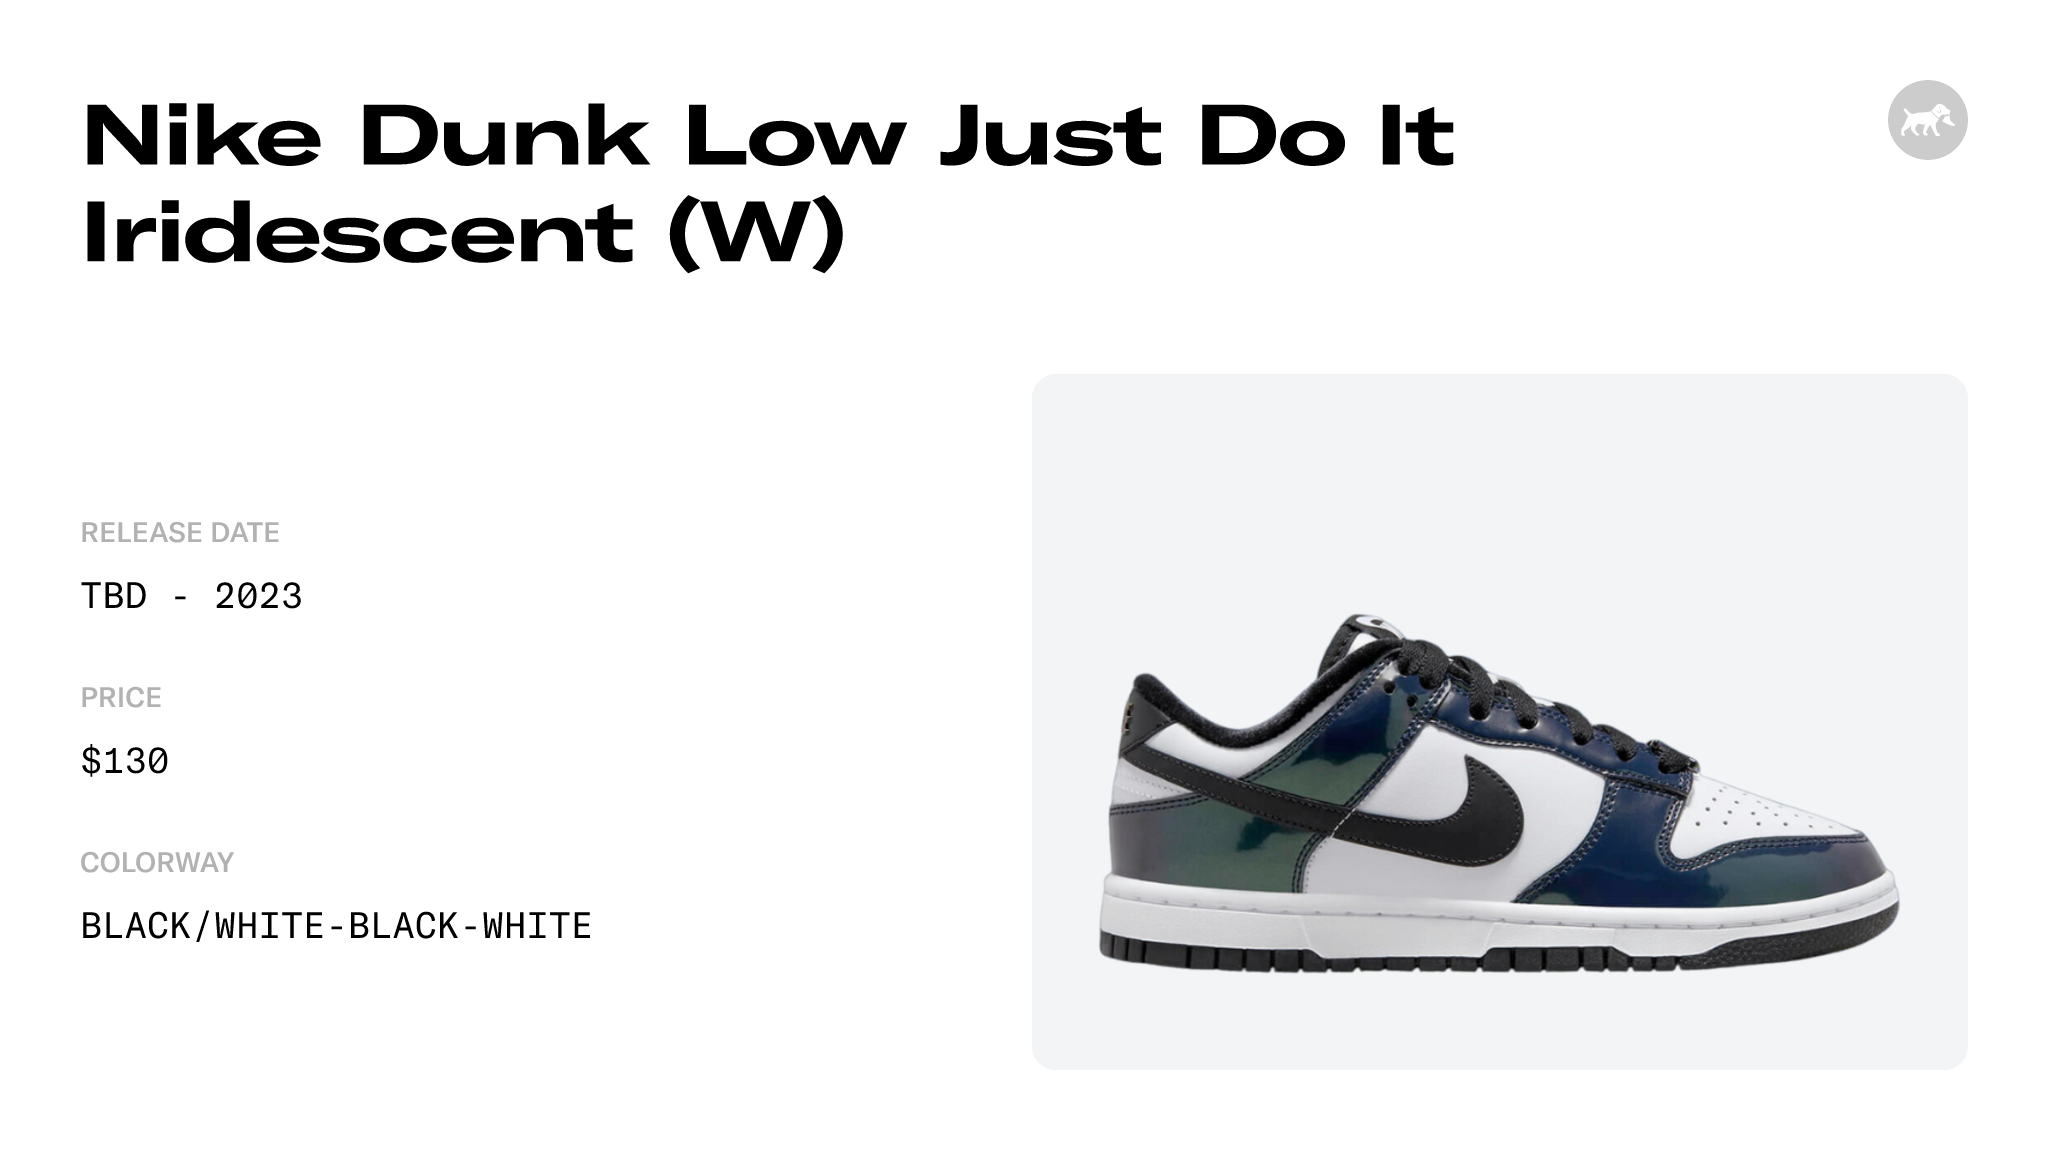 Protection sneakers Nike anti plis blanc 40-46 (Air Force 1, Air Jordan 1,  dunk)